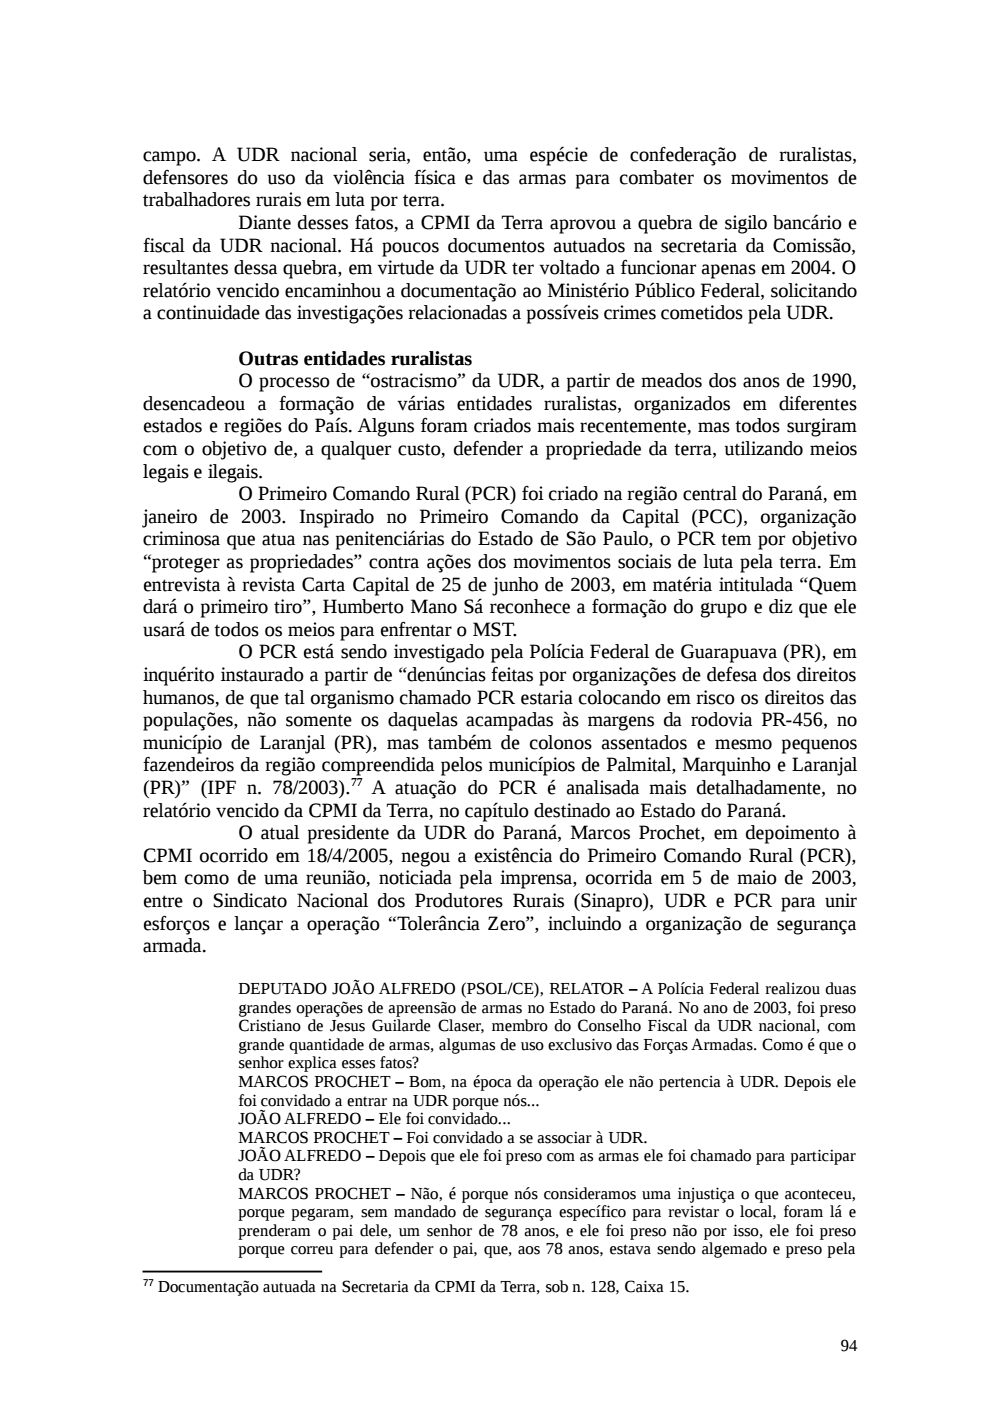 Page 94 from Relatório final da comissão